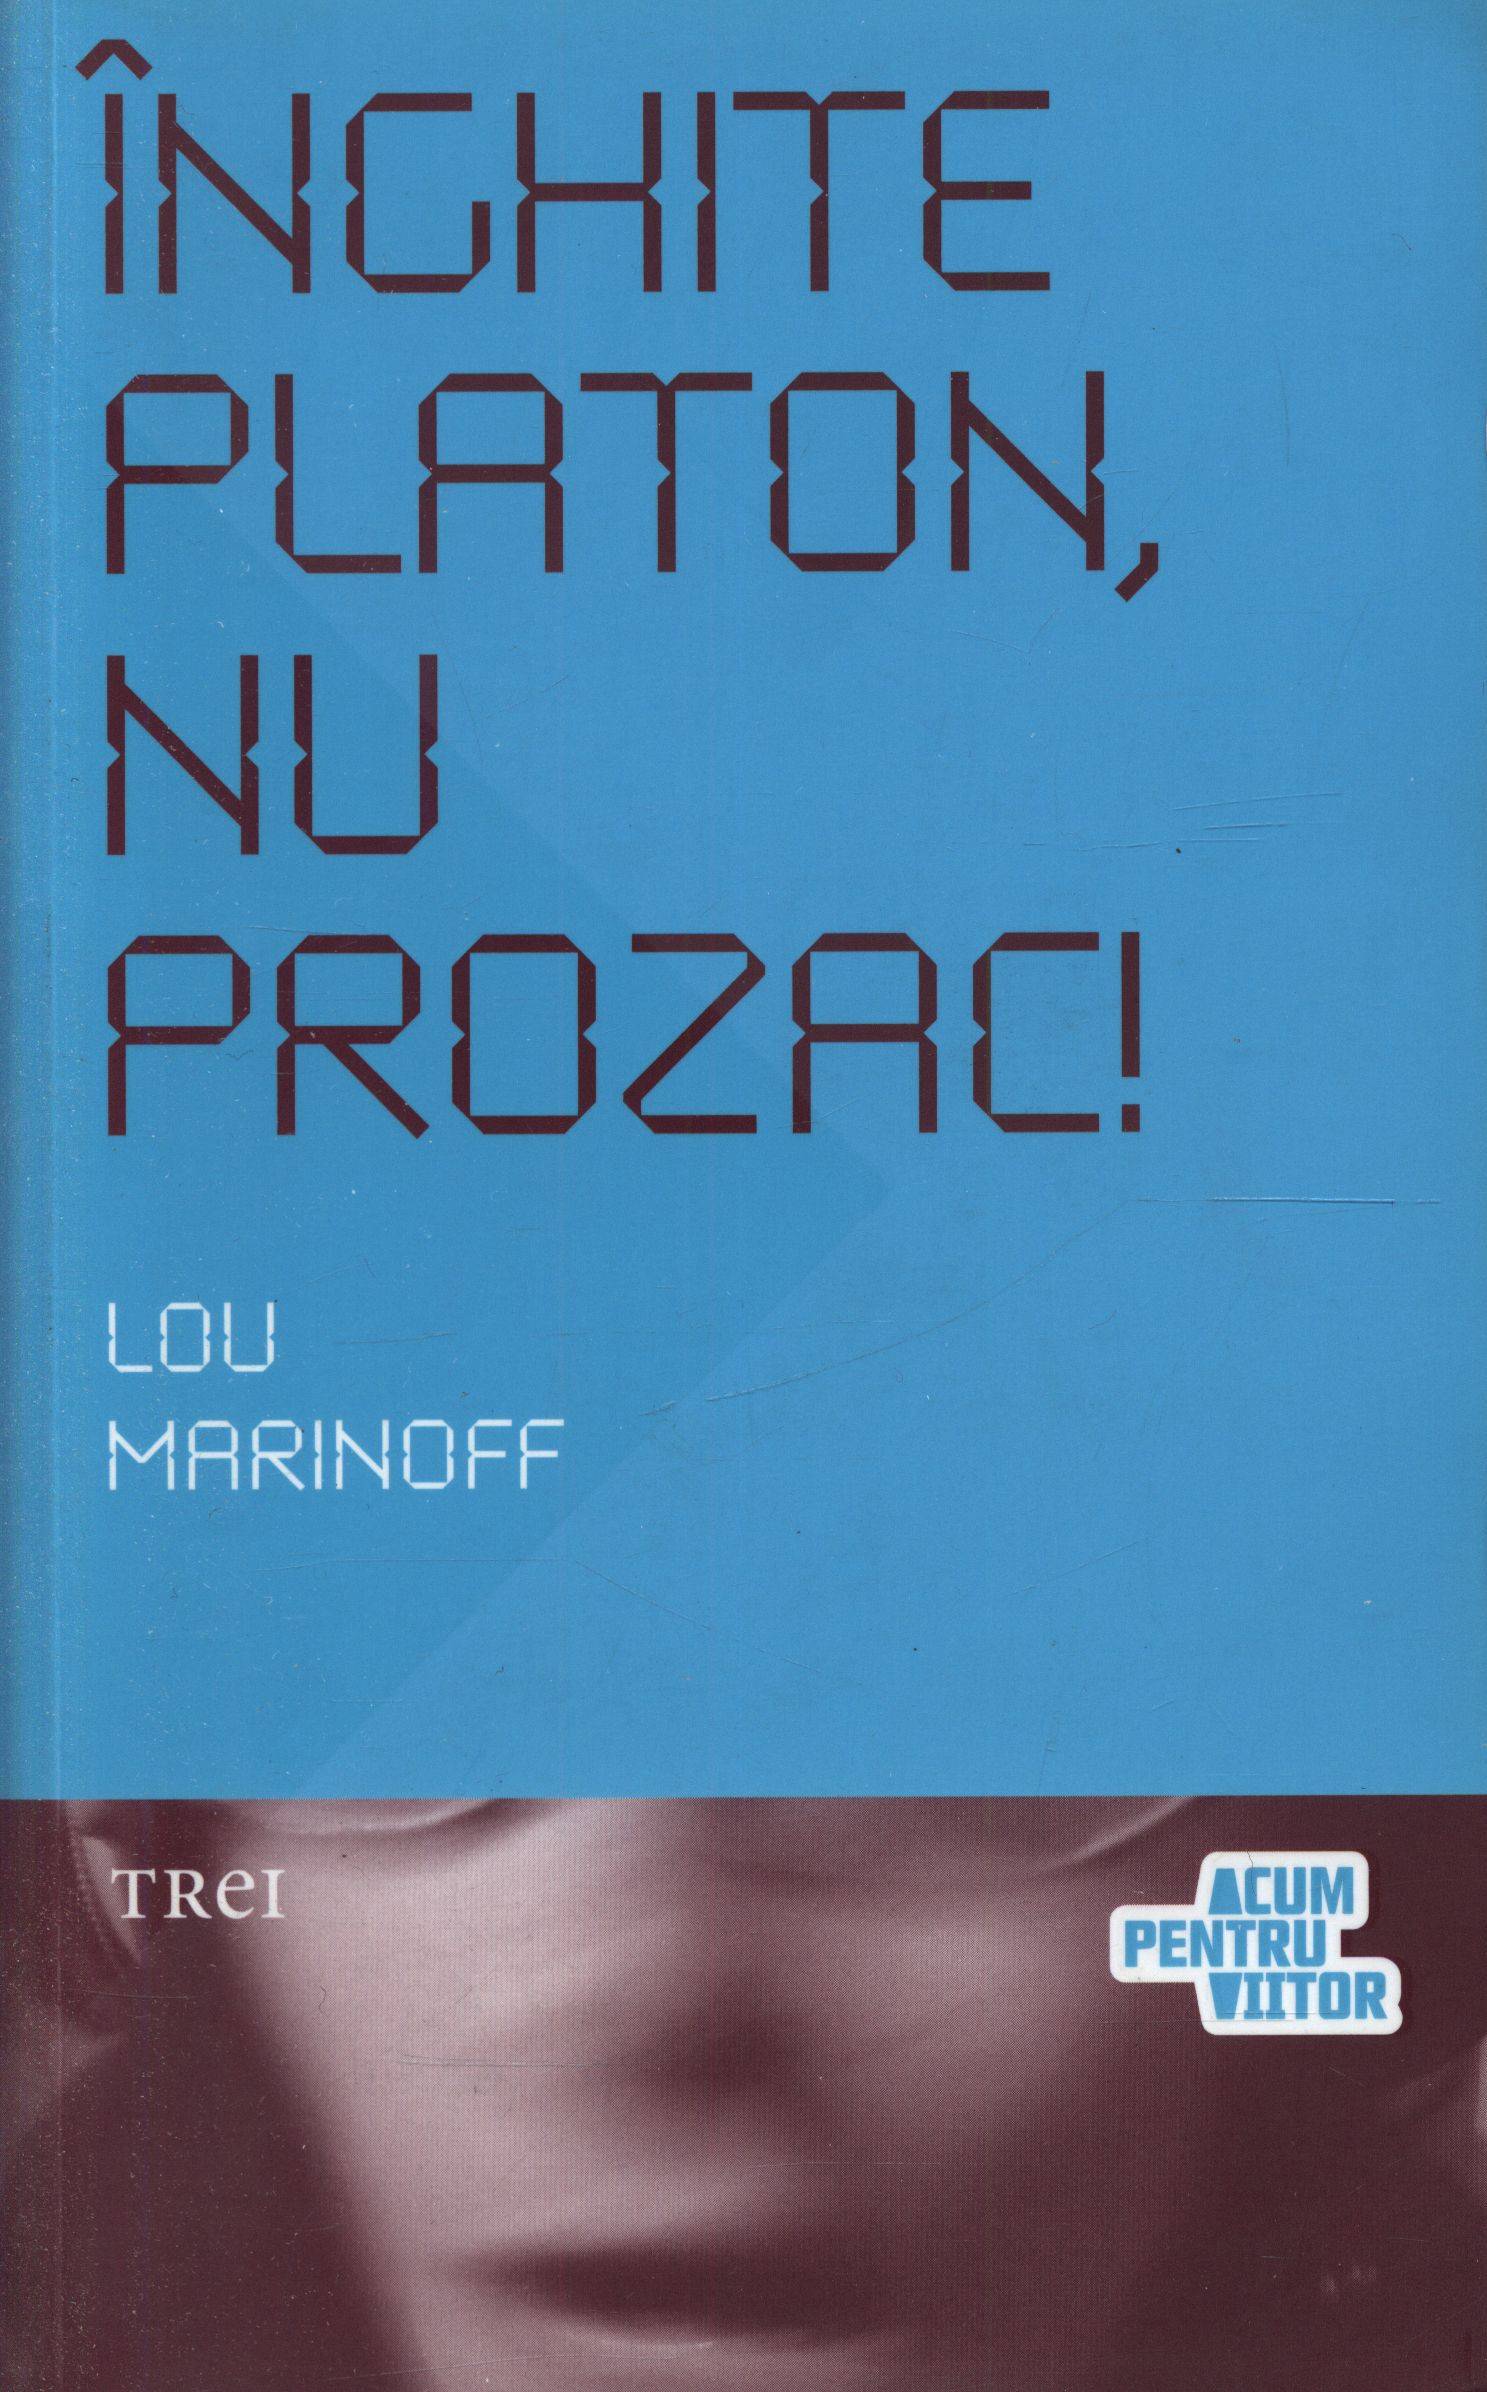 Inghite Platon, nu prozac! - Lou Marinoff